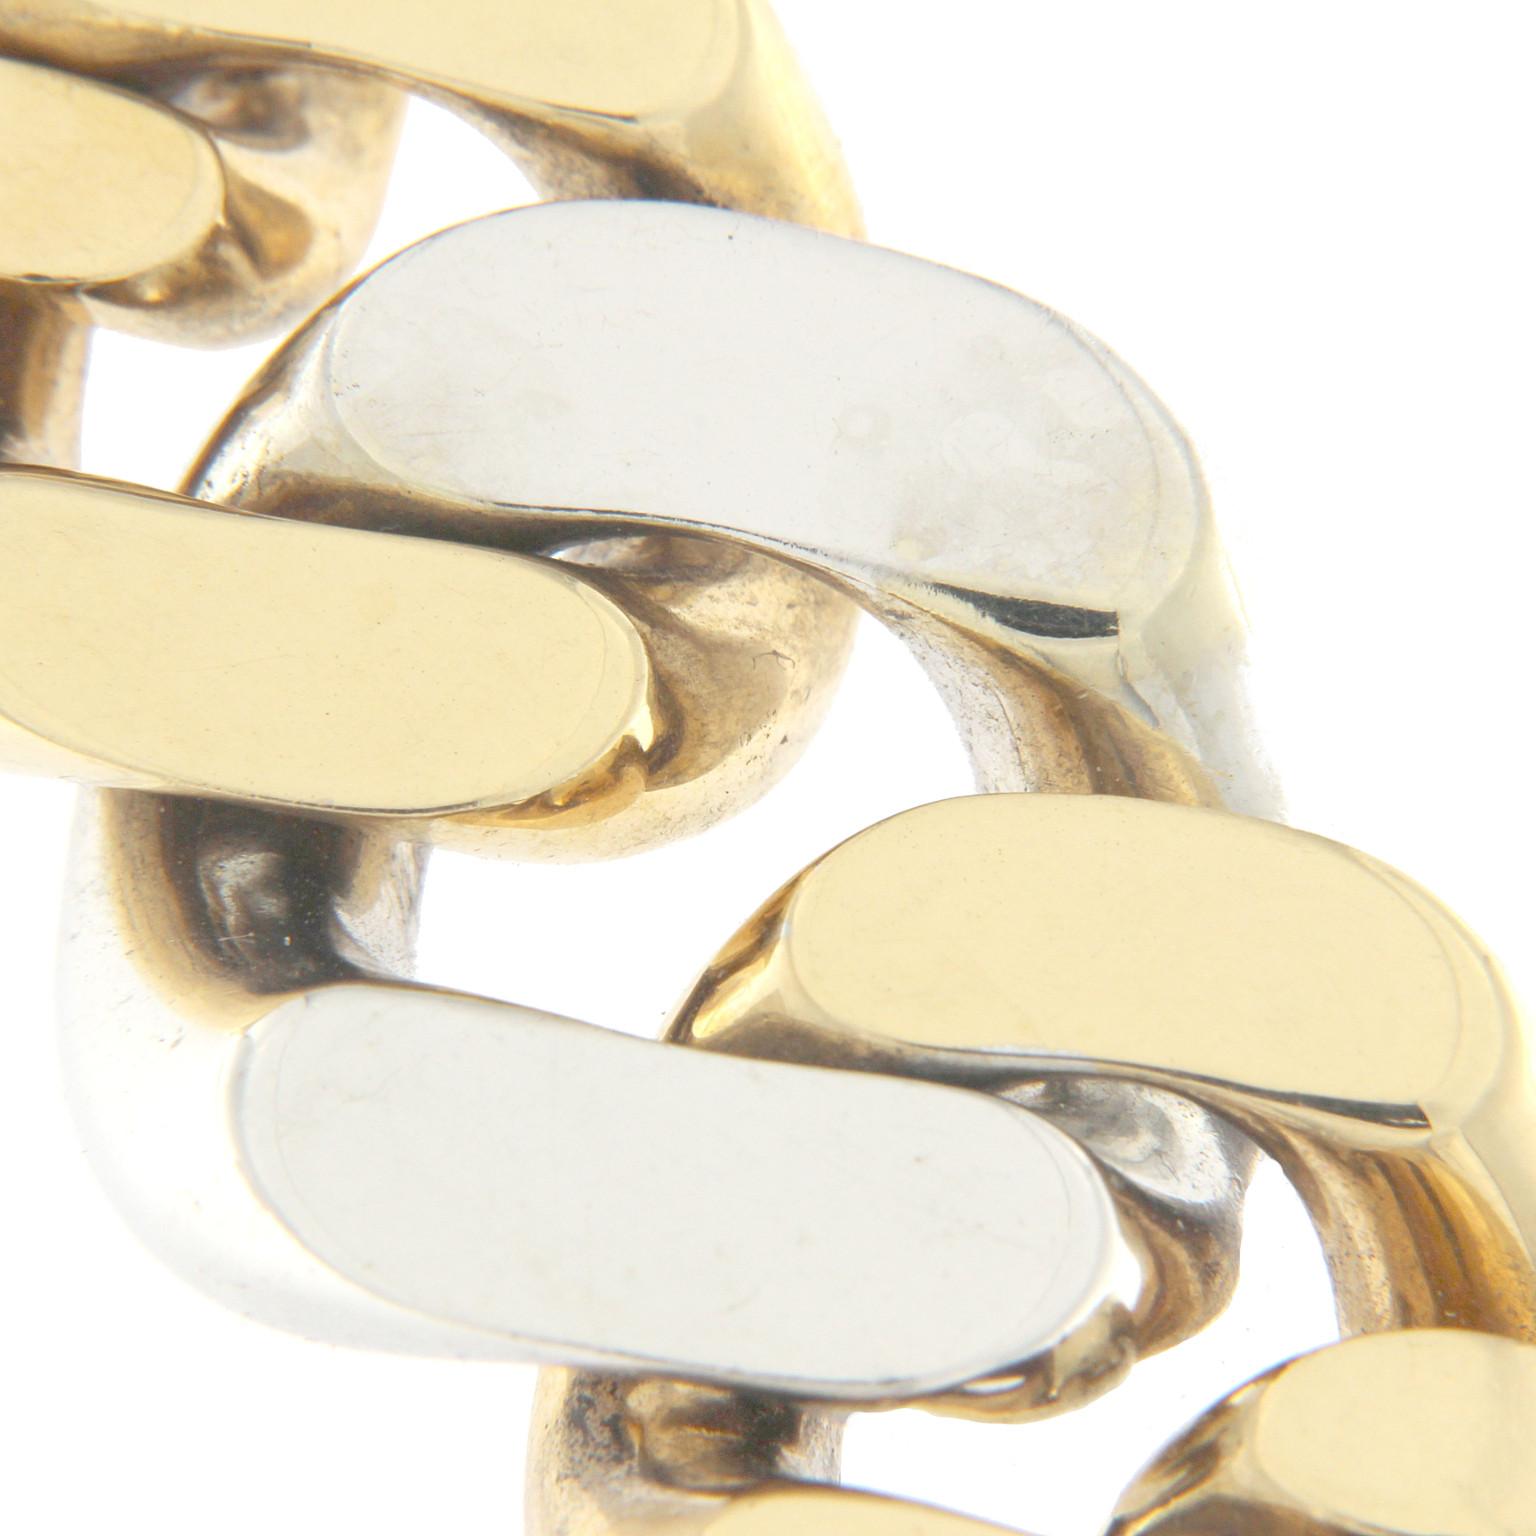 Bracelet chaîne couplée style Groumette de grand effet visuel en or rose avec un maillon central blanc, dégradé.
Poids total de  or 18 kt gr 169.80
Timbre 750

